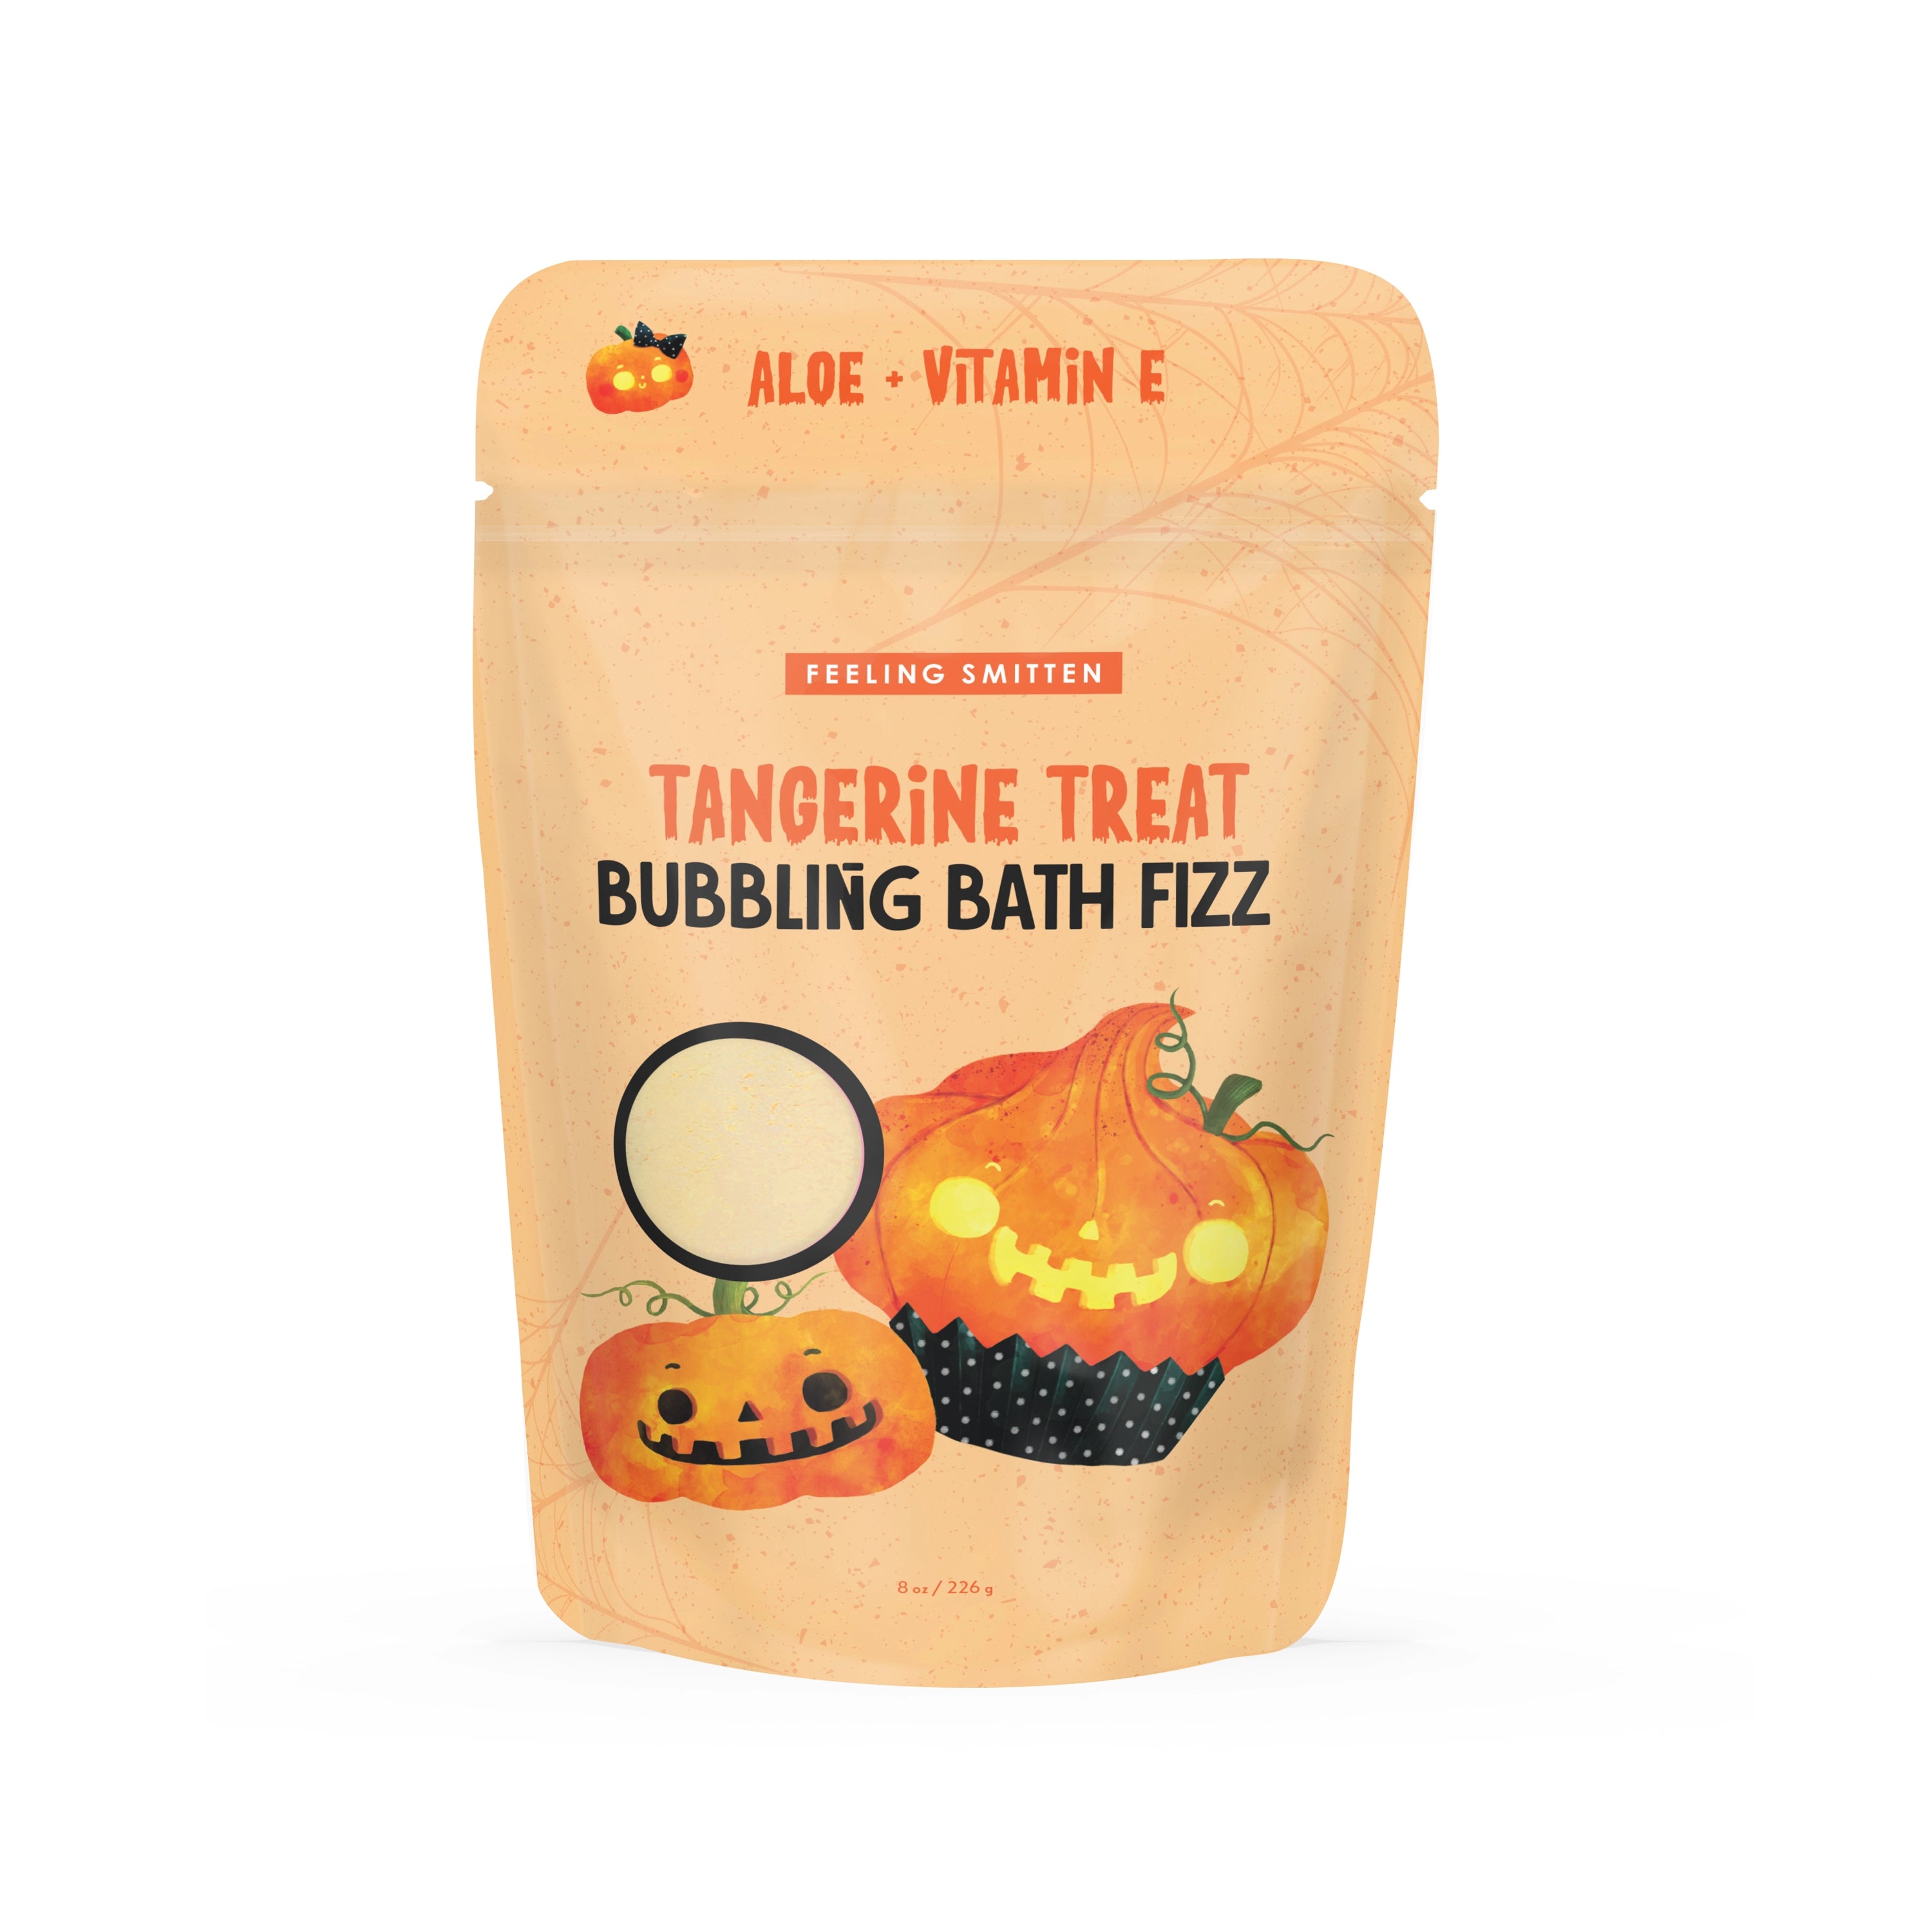 Tangerine Treat Bubbling Bath Fizz